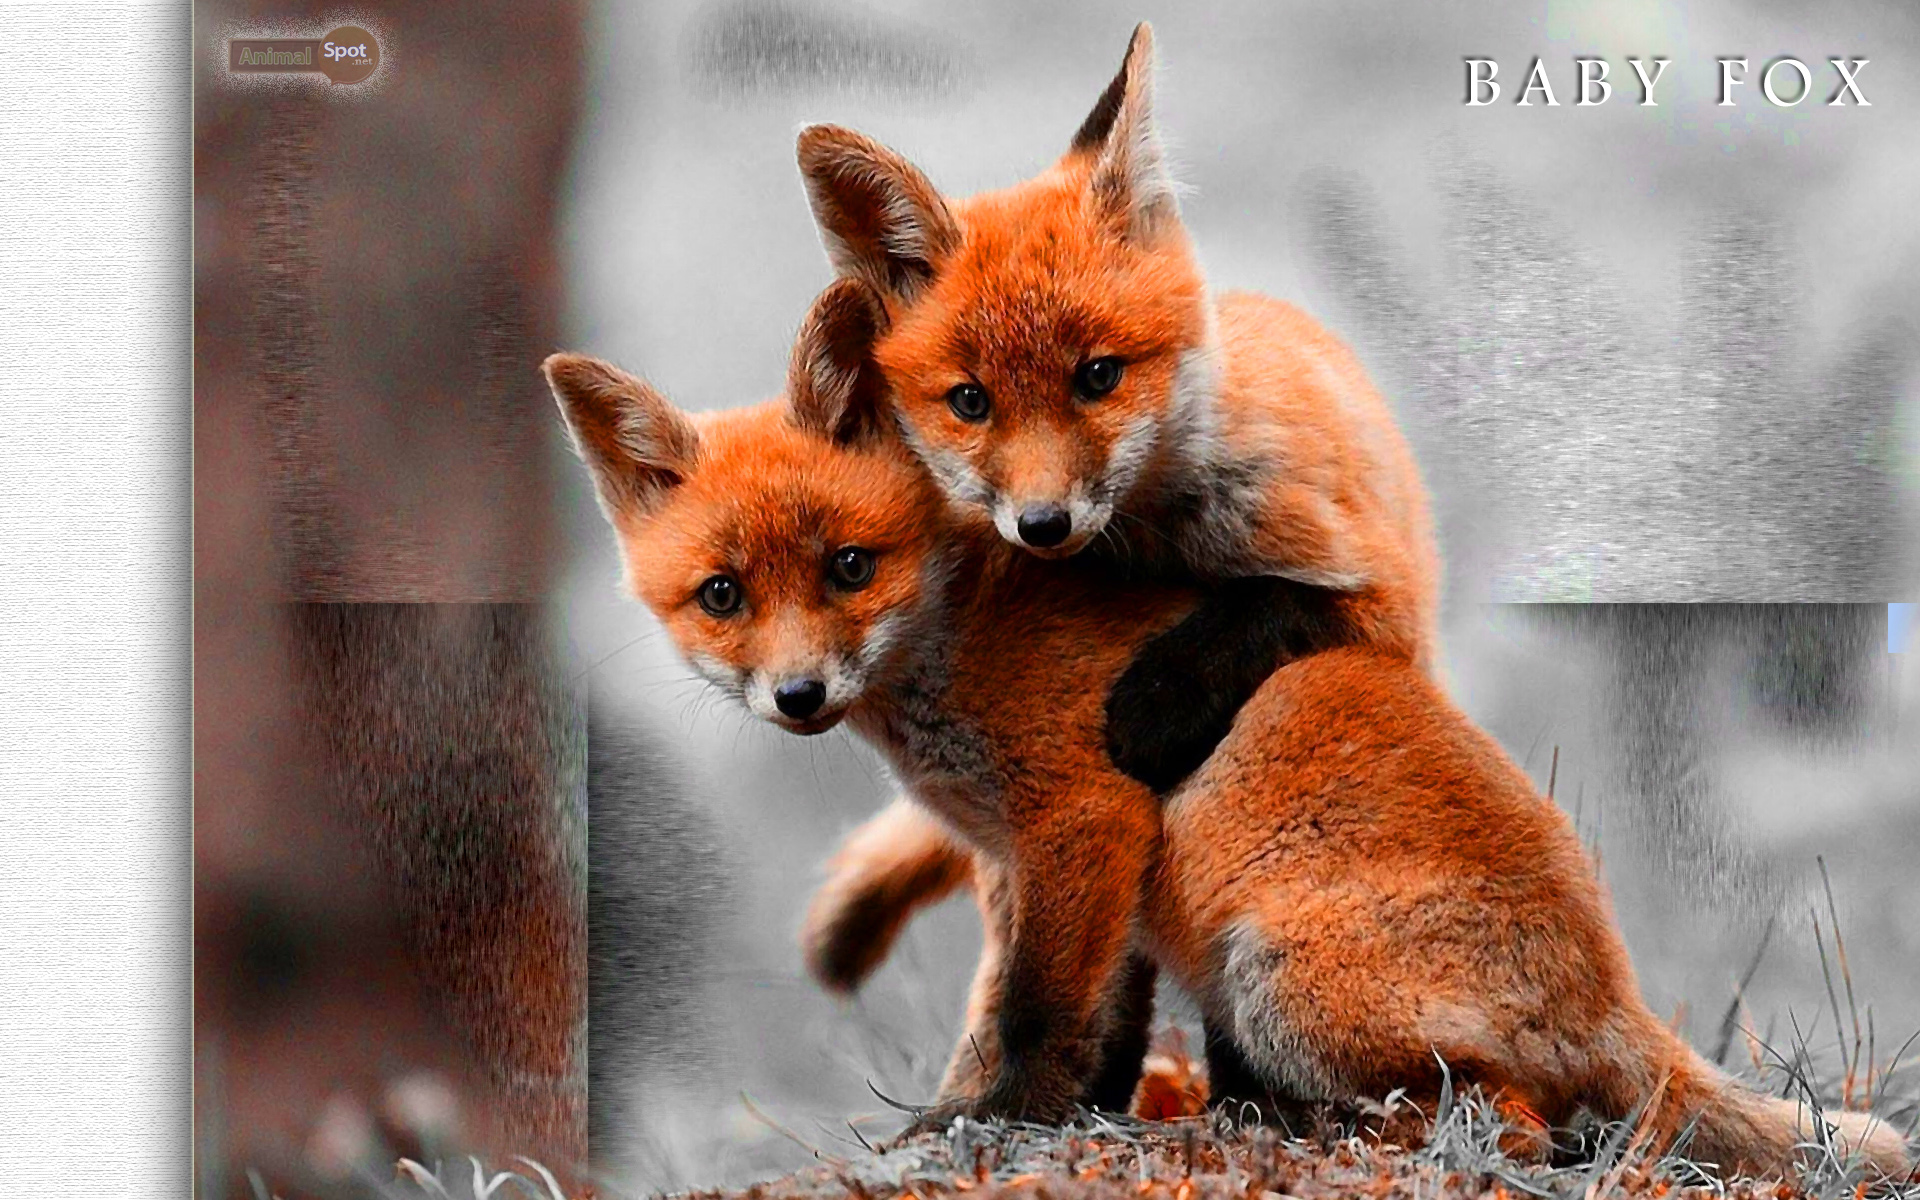 cáo fox hình nền  cáo cáo fox hình nền 24577442  fanpop